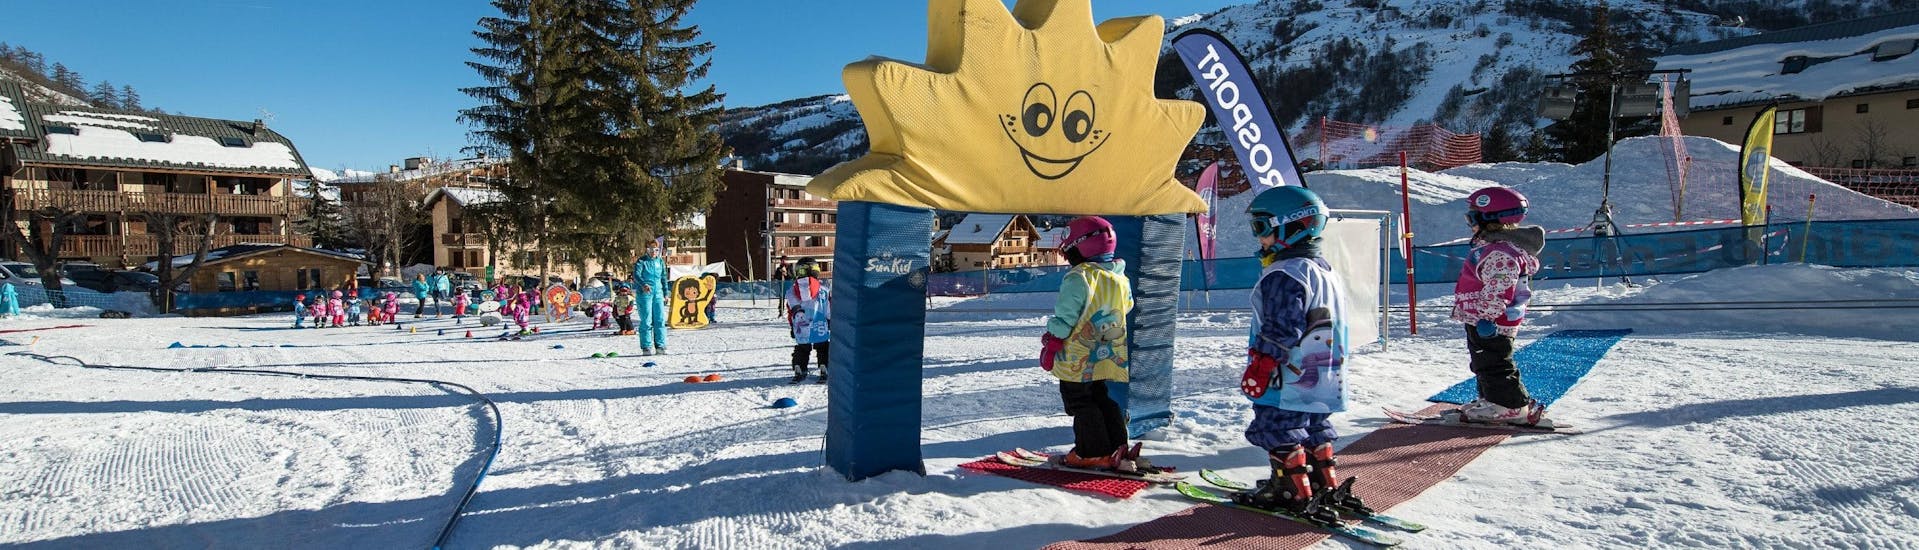 Des enfants apprennent à skier avec des jeux pendant leur Cours de ski Enfants "Jardin des neiges" (3-4 ans) - Matin avec l'école de ski ESI Ecoloski Barèges.